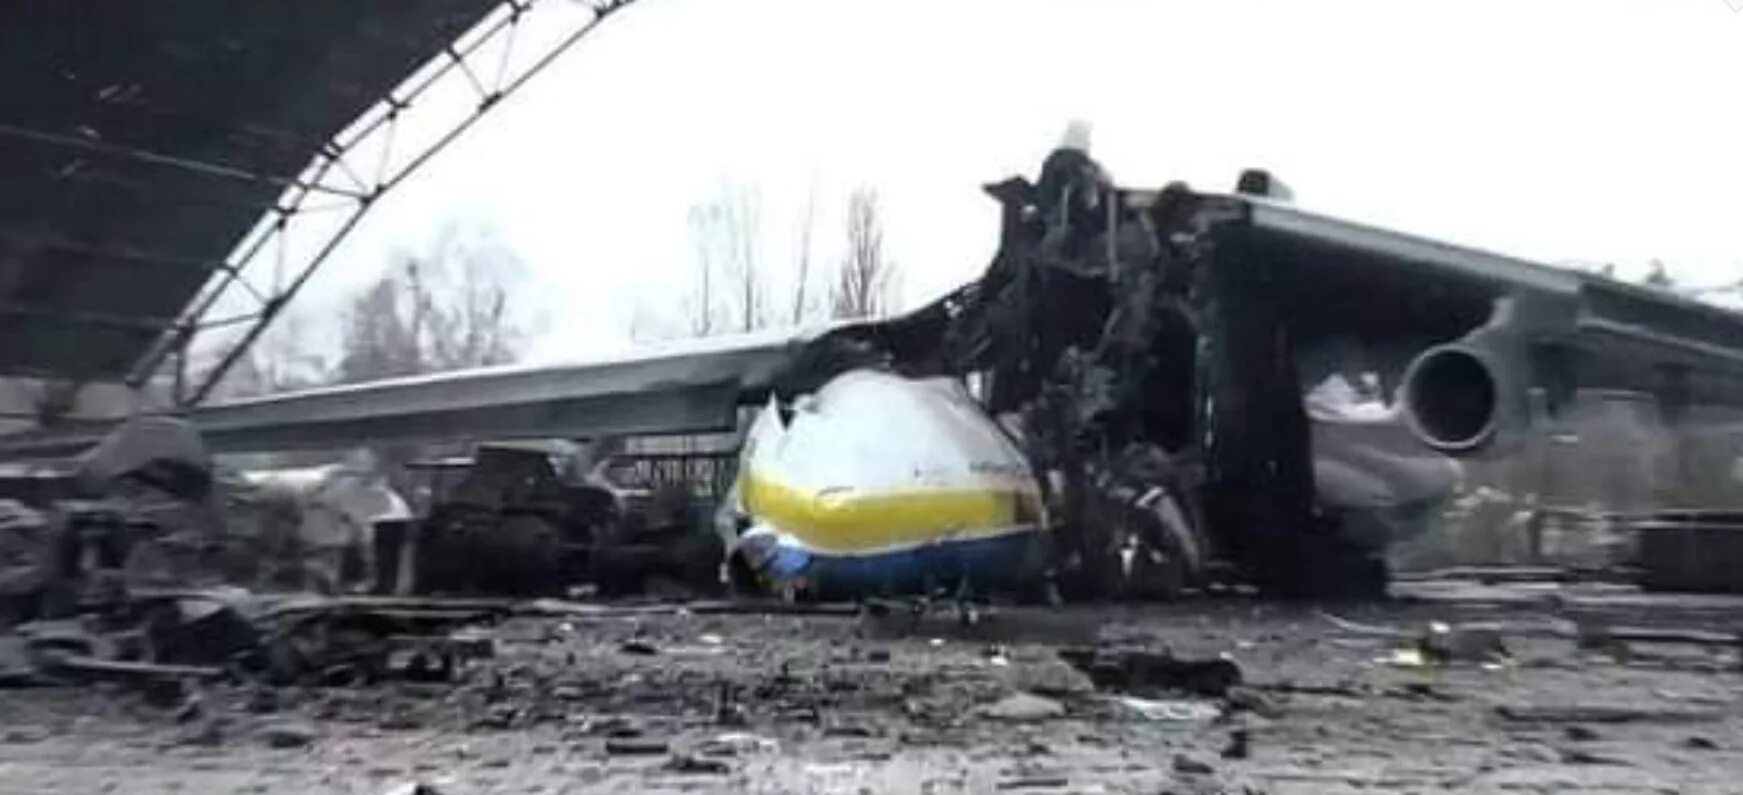 Антонов 225 Мрия уничтожен. Самолёт АН-225 Мрия уничтожен. АН-225 Мрия разбомбили. Самолёт АН-225 Мрия уничтожен в аэропорту Гостомеля.